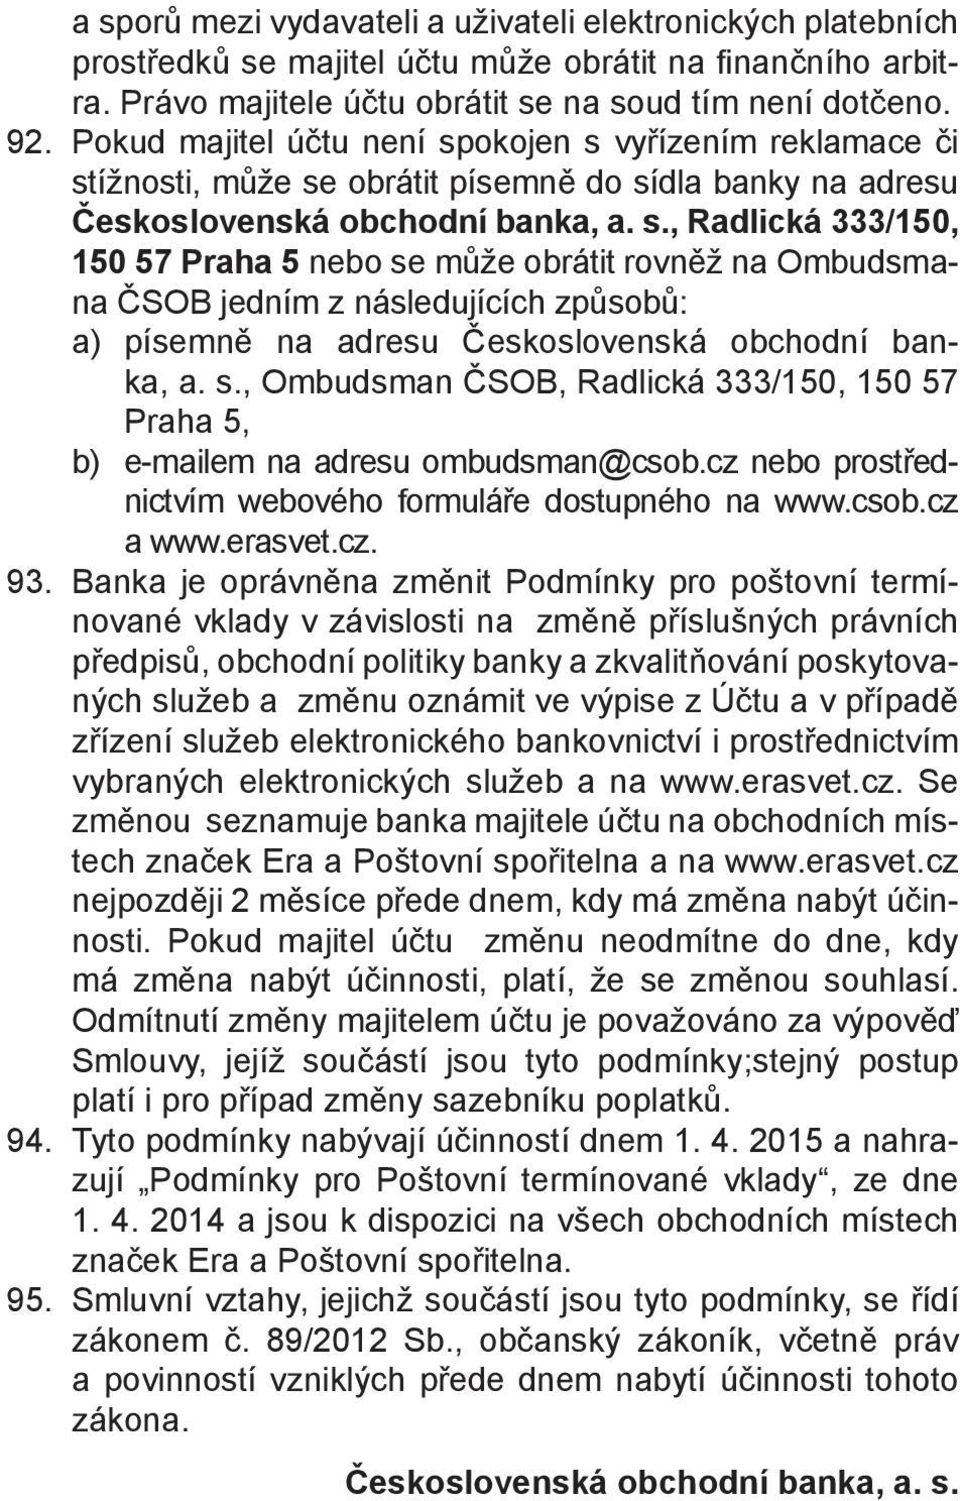 s., Ombudsman ČSOB, Radlická 333/150, 150 57 Praha 5, b) e-mailem na adresu ombudsman@csob.cz nebo prostřednictvím webového formuláře dostupného na www.csob.cz a www.erasvet.cz. 93.